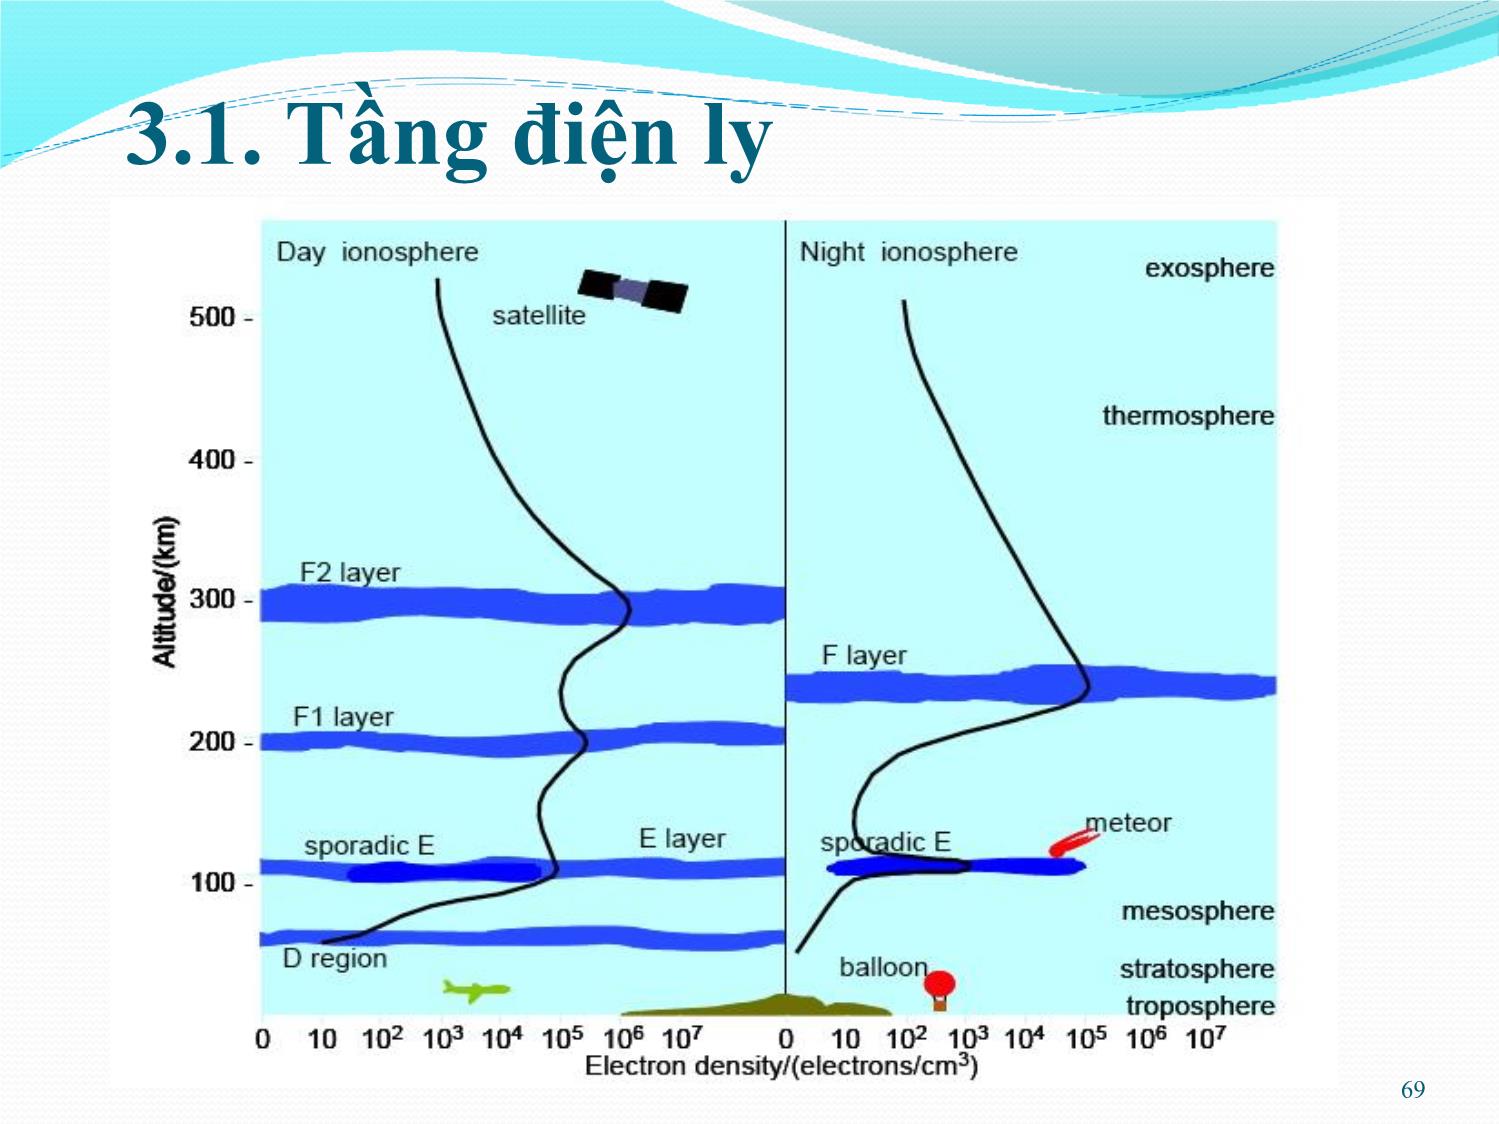 Bài giảng Kỹ thuật anten và truyền sóng - Chương 3: Truyền sóng trong tầng điện ly - Nguyễn Thị Linh Phương trang 5